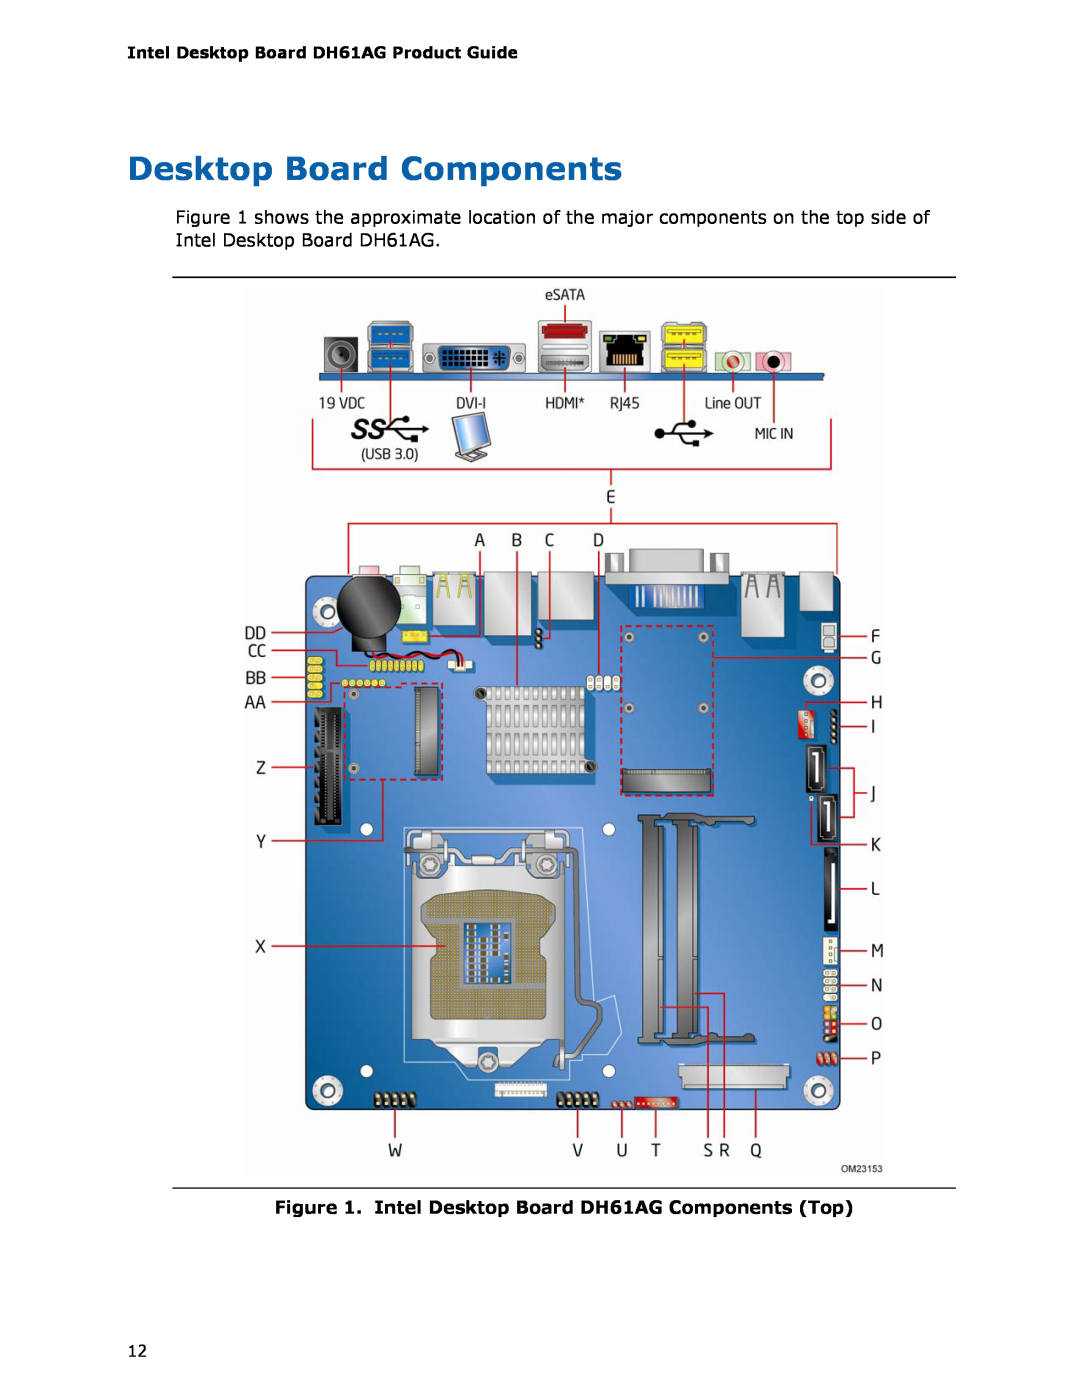 Intel BOXDH61AG manual Desktop Board Components, Intel Desktop Board DH61AG Components Top 